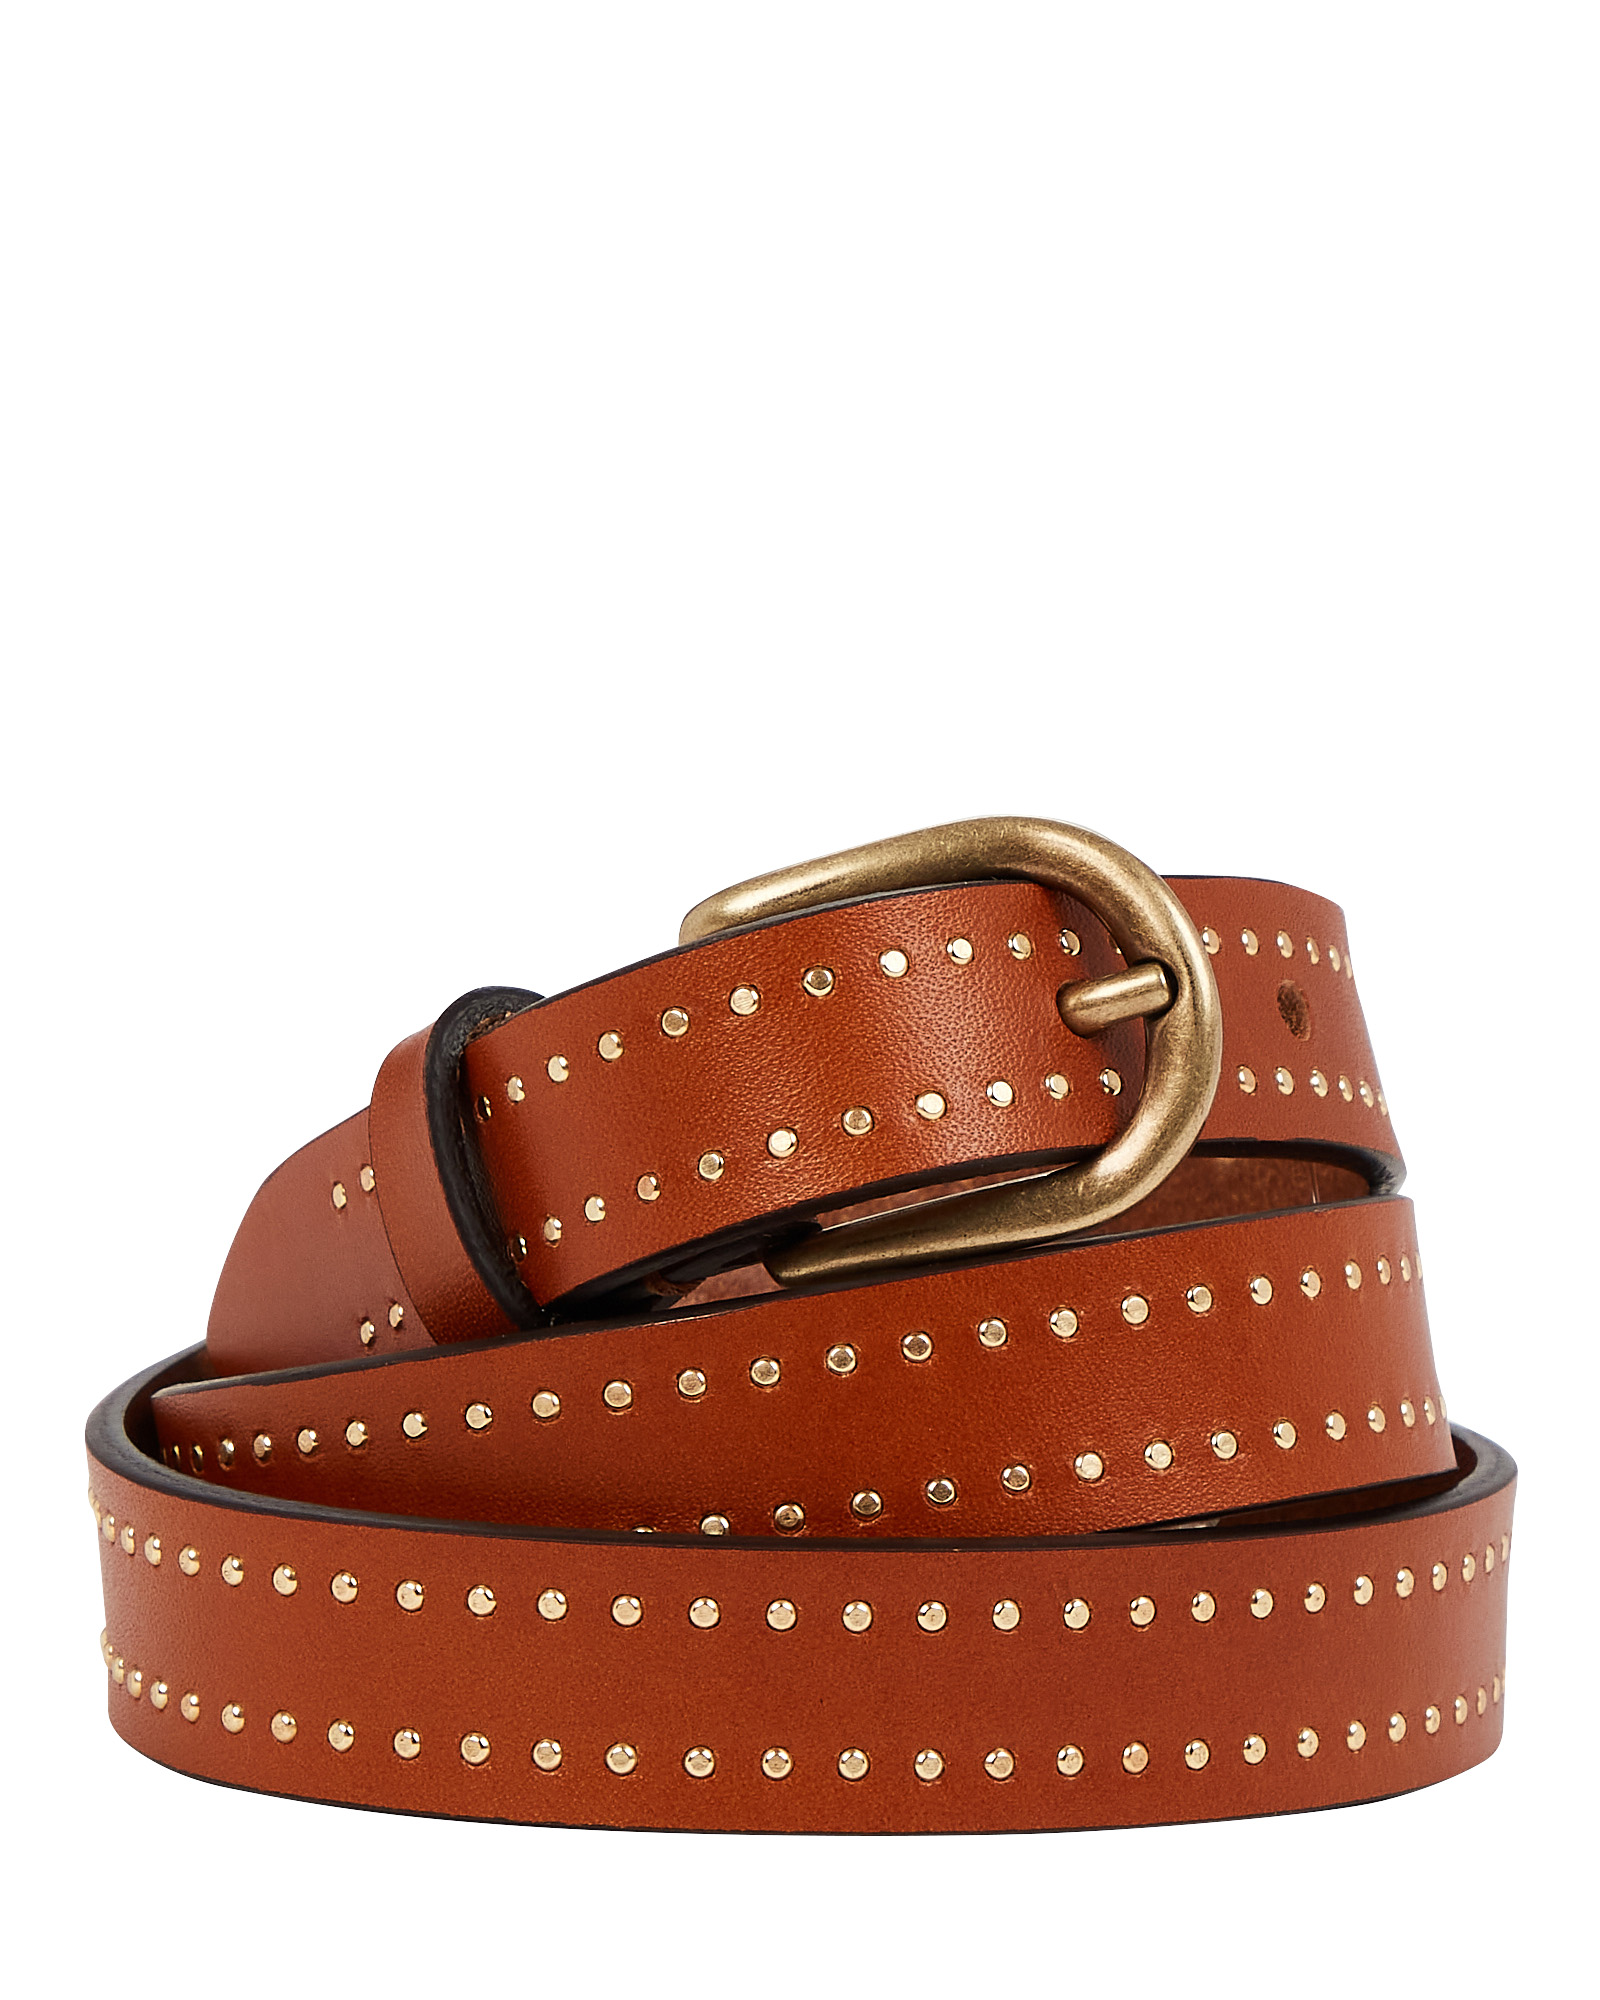 Isabel Marant Kane Studded Leather Buckle Belt | INTERMIX®